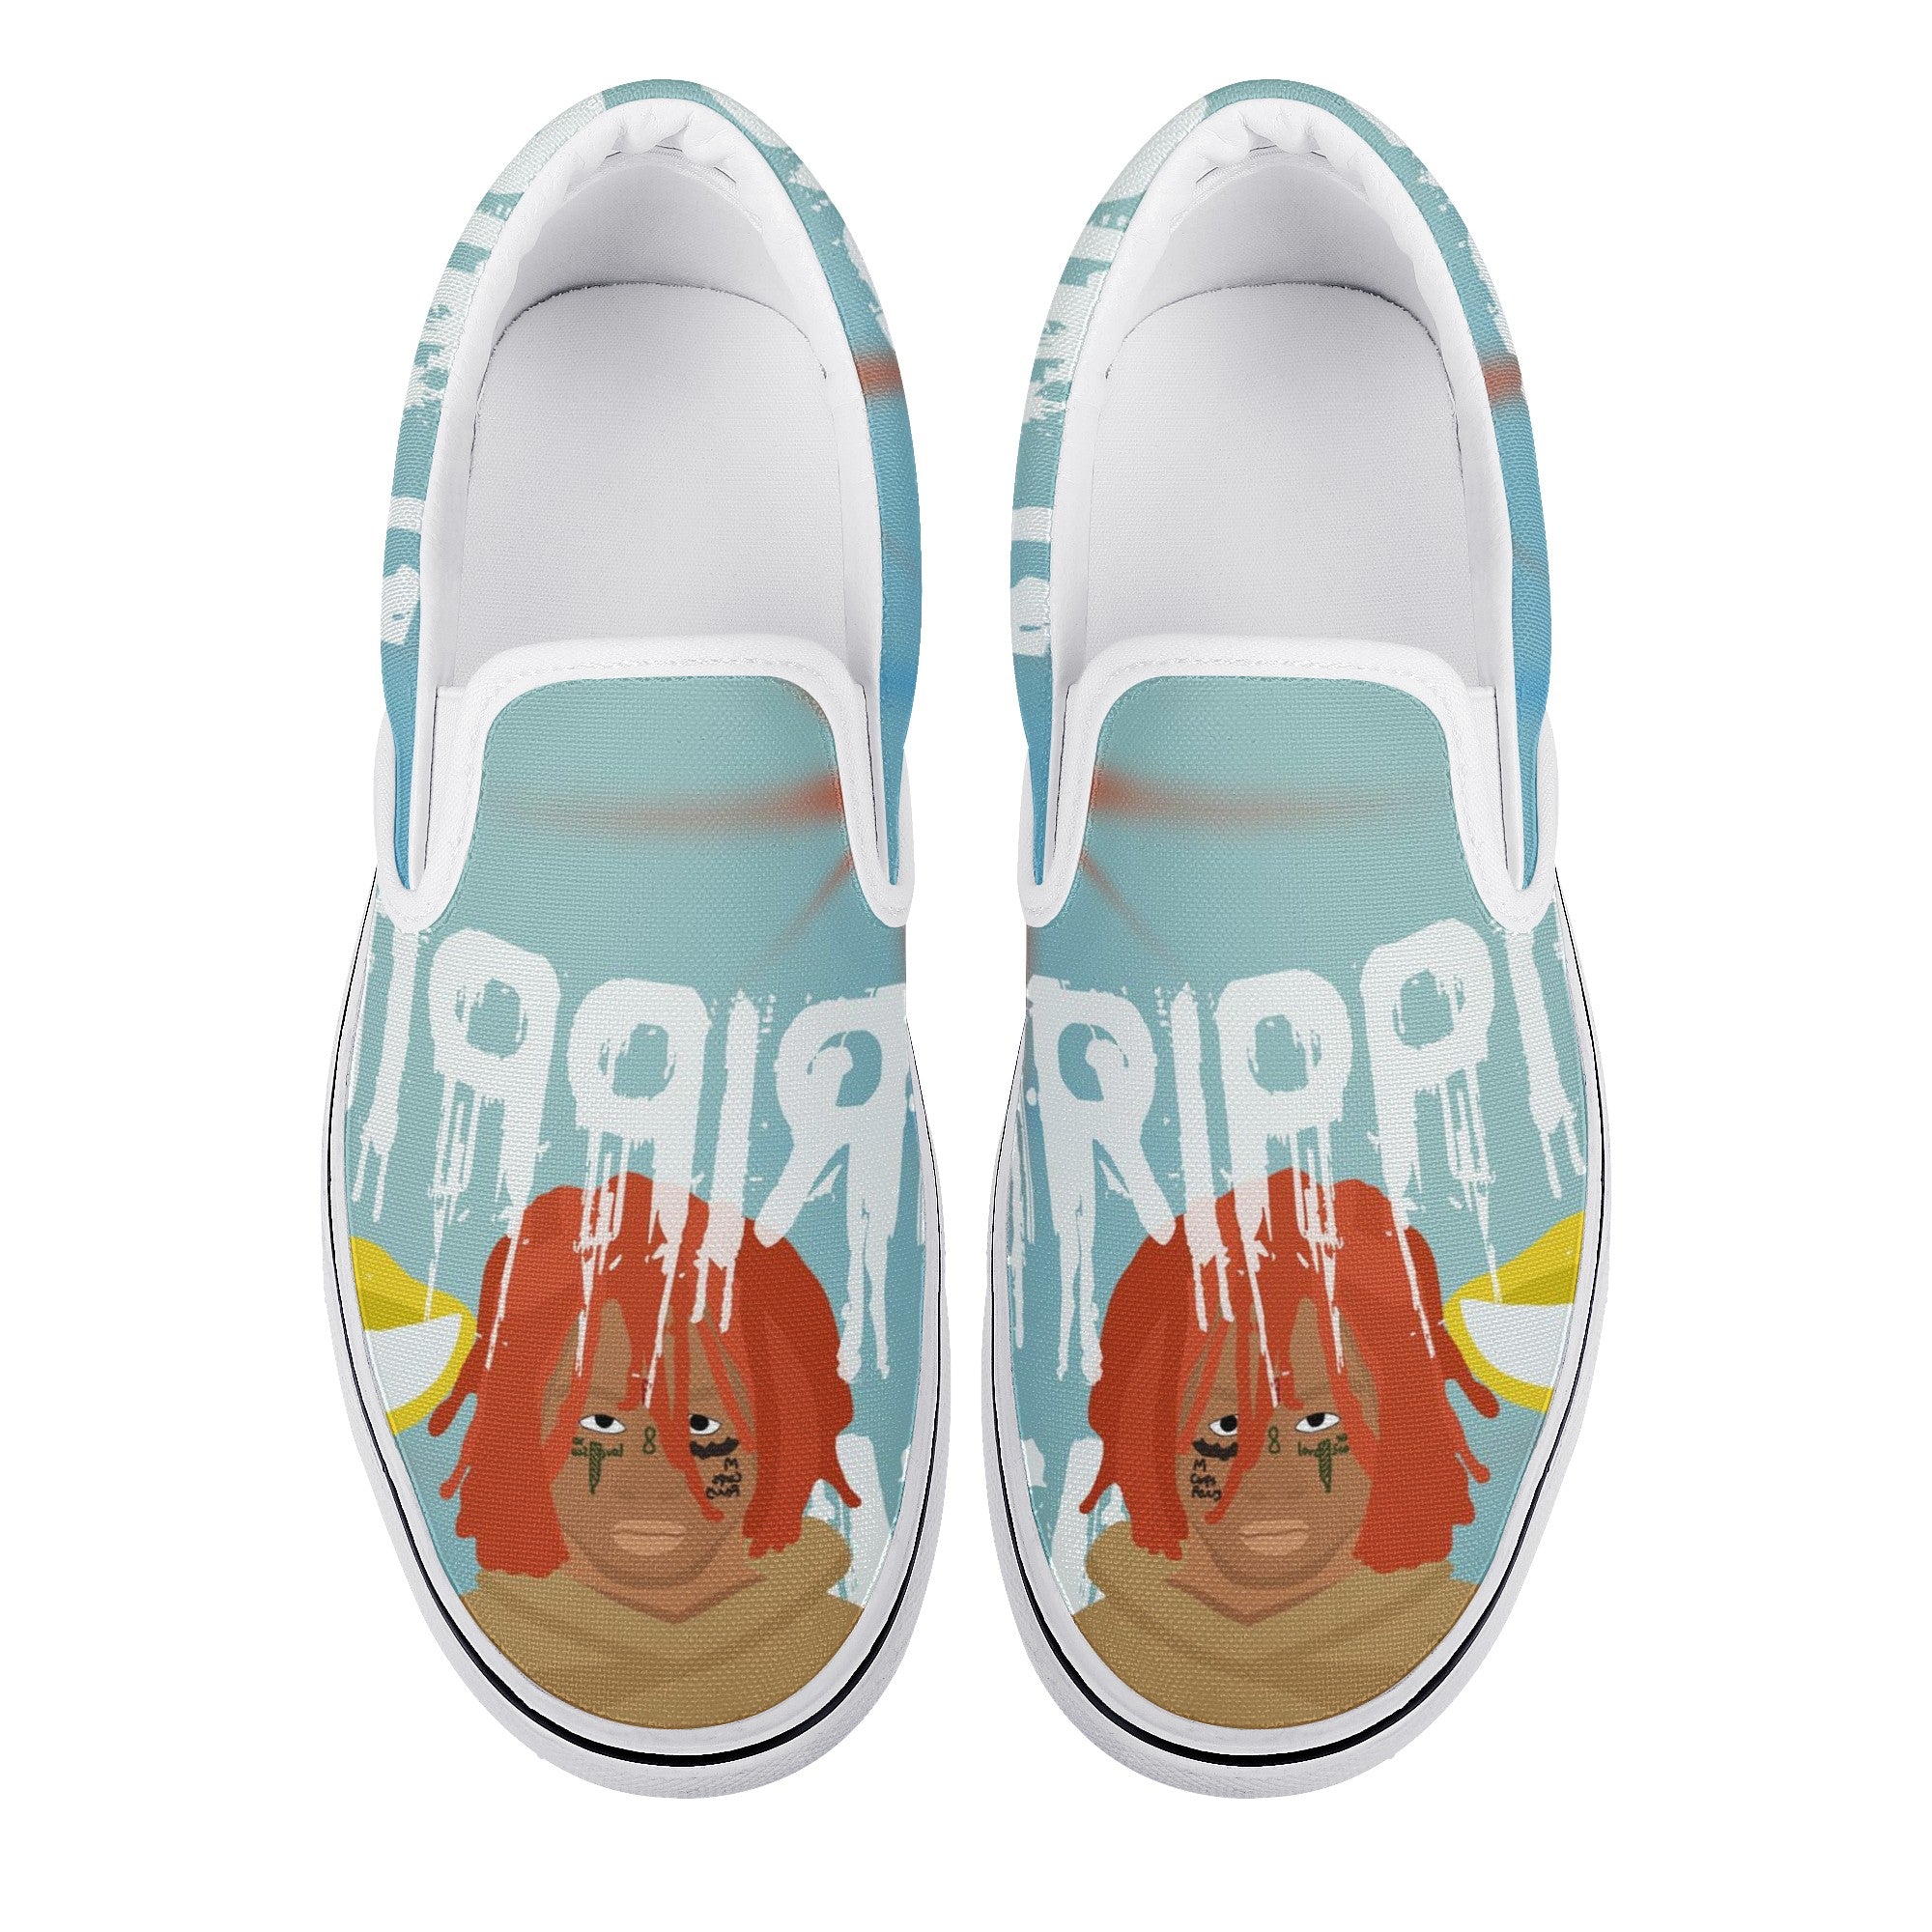 Trippie Redd Custom Vans Slip On Shoes